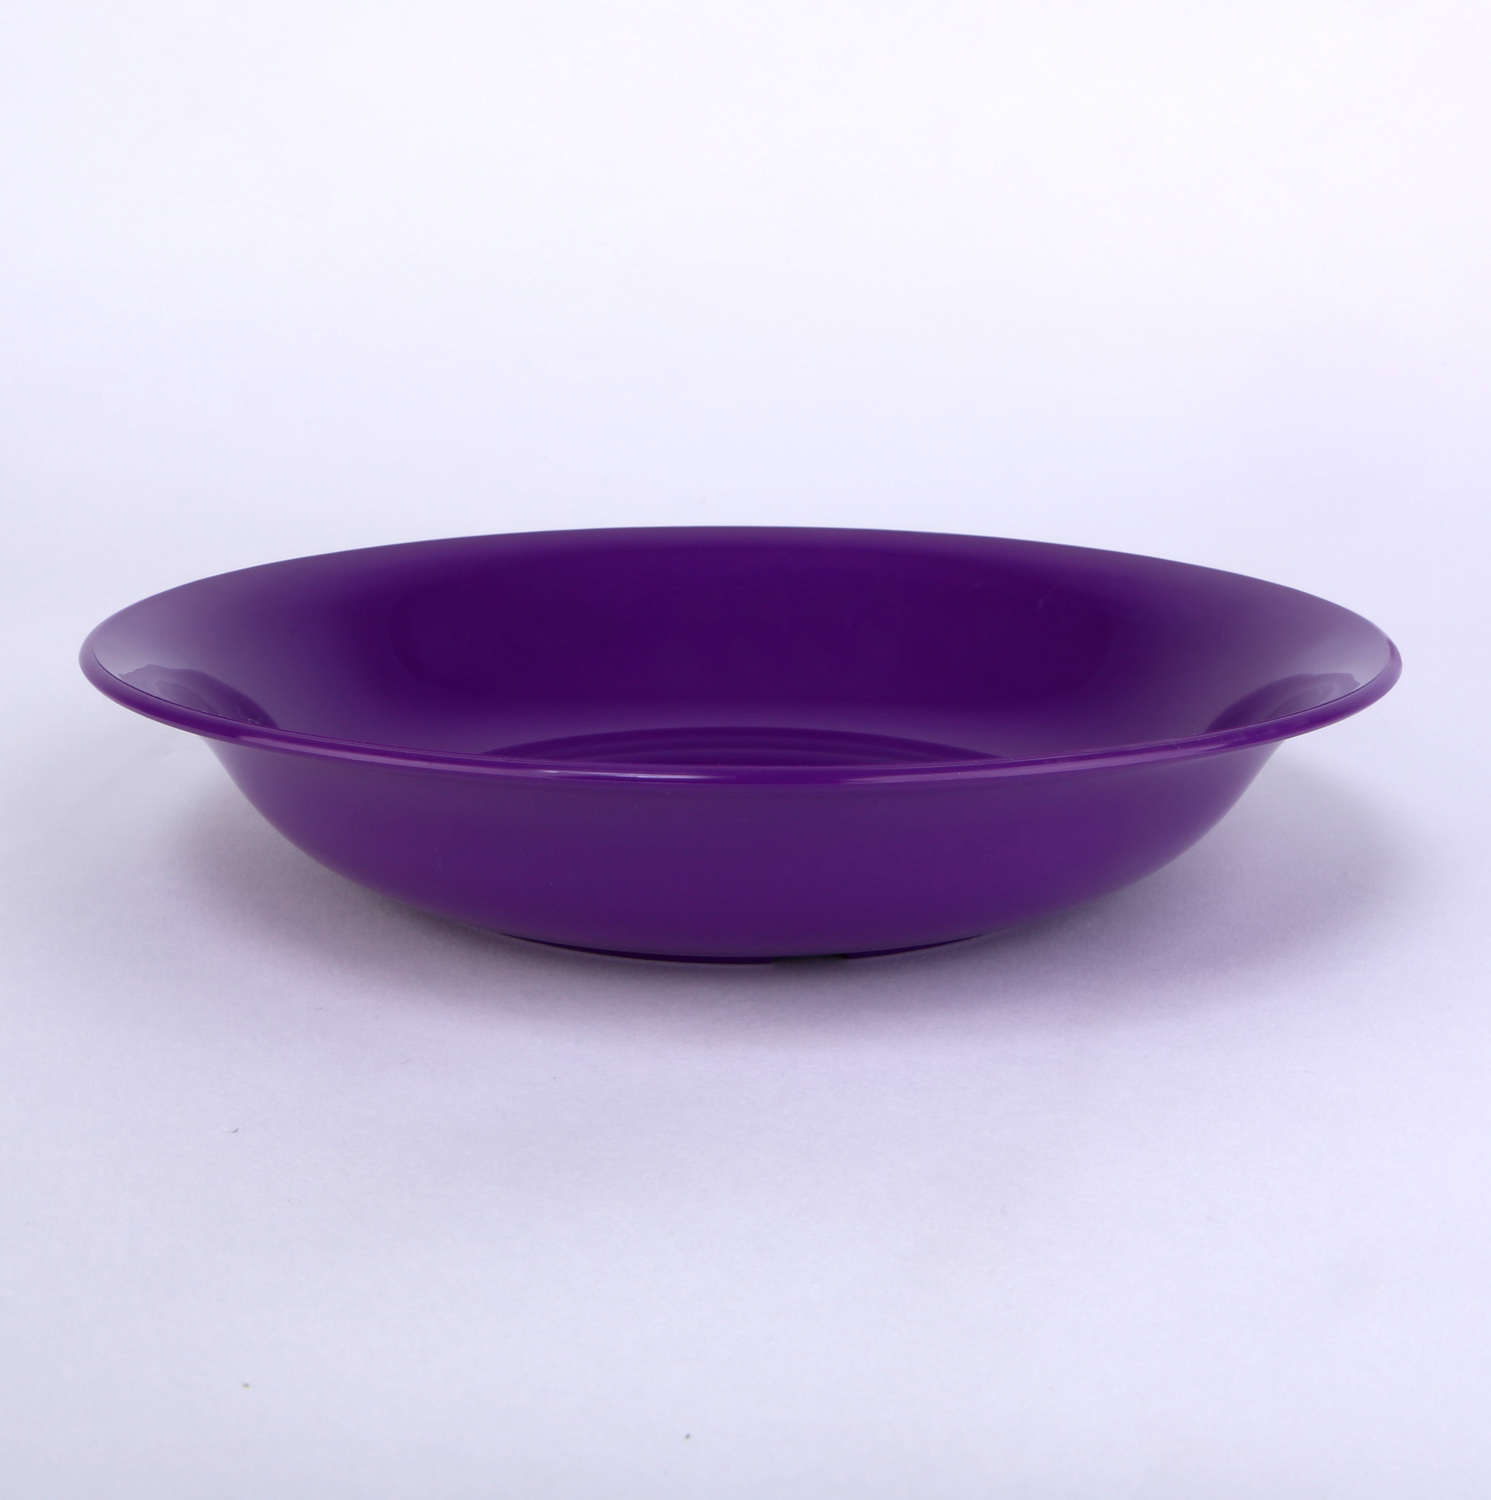 vaLon Zephyr Suppenteller 20,5 cmaus schadstofffreiem Kunststoff in der Farbe lila.